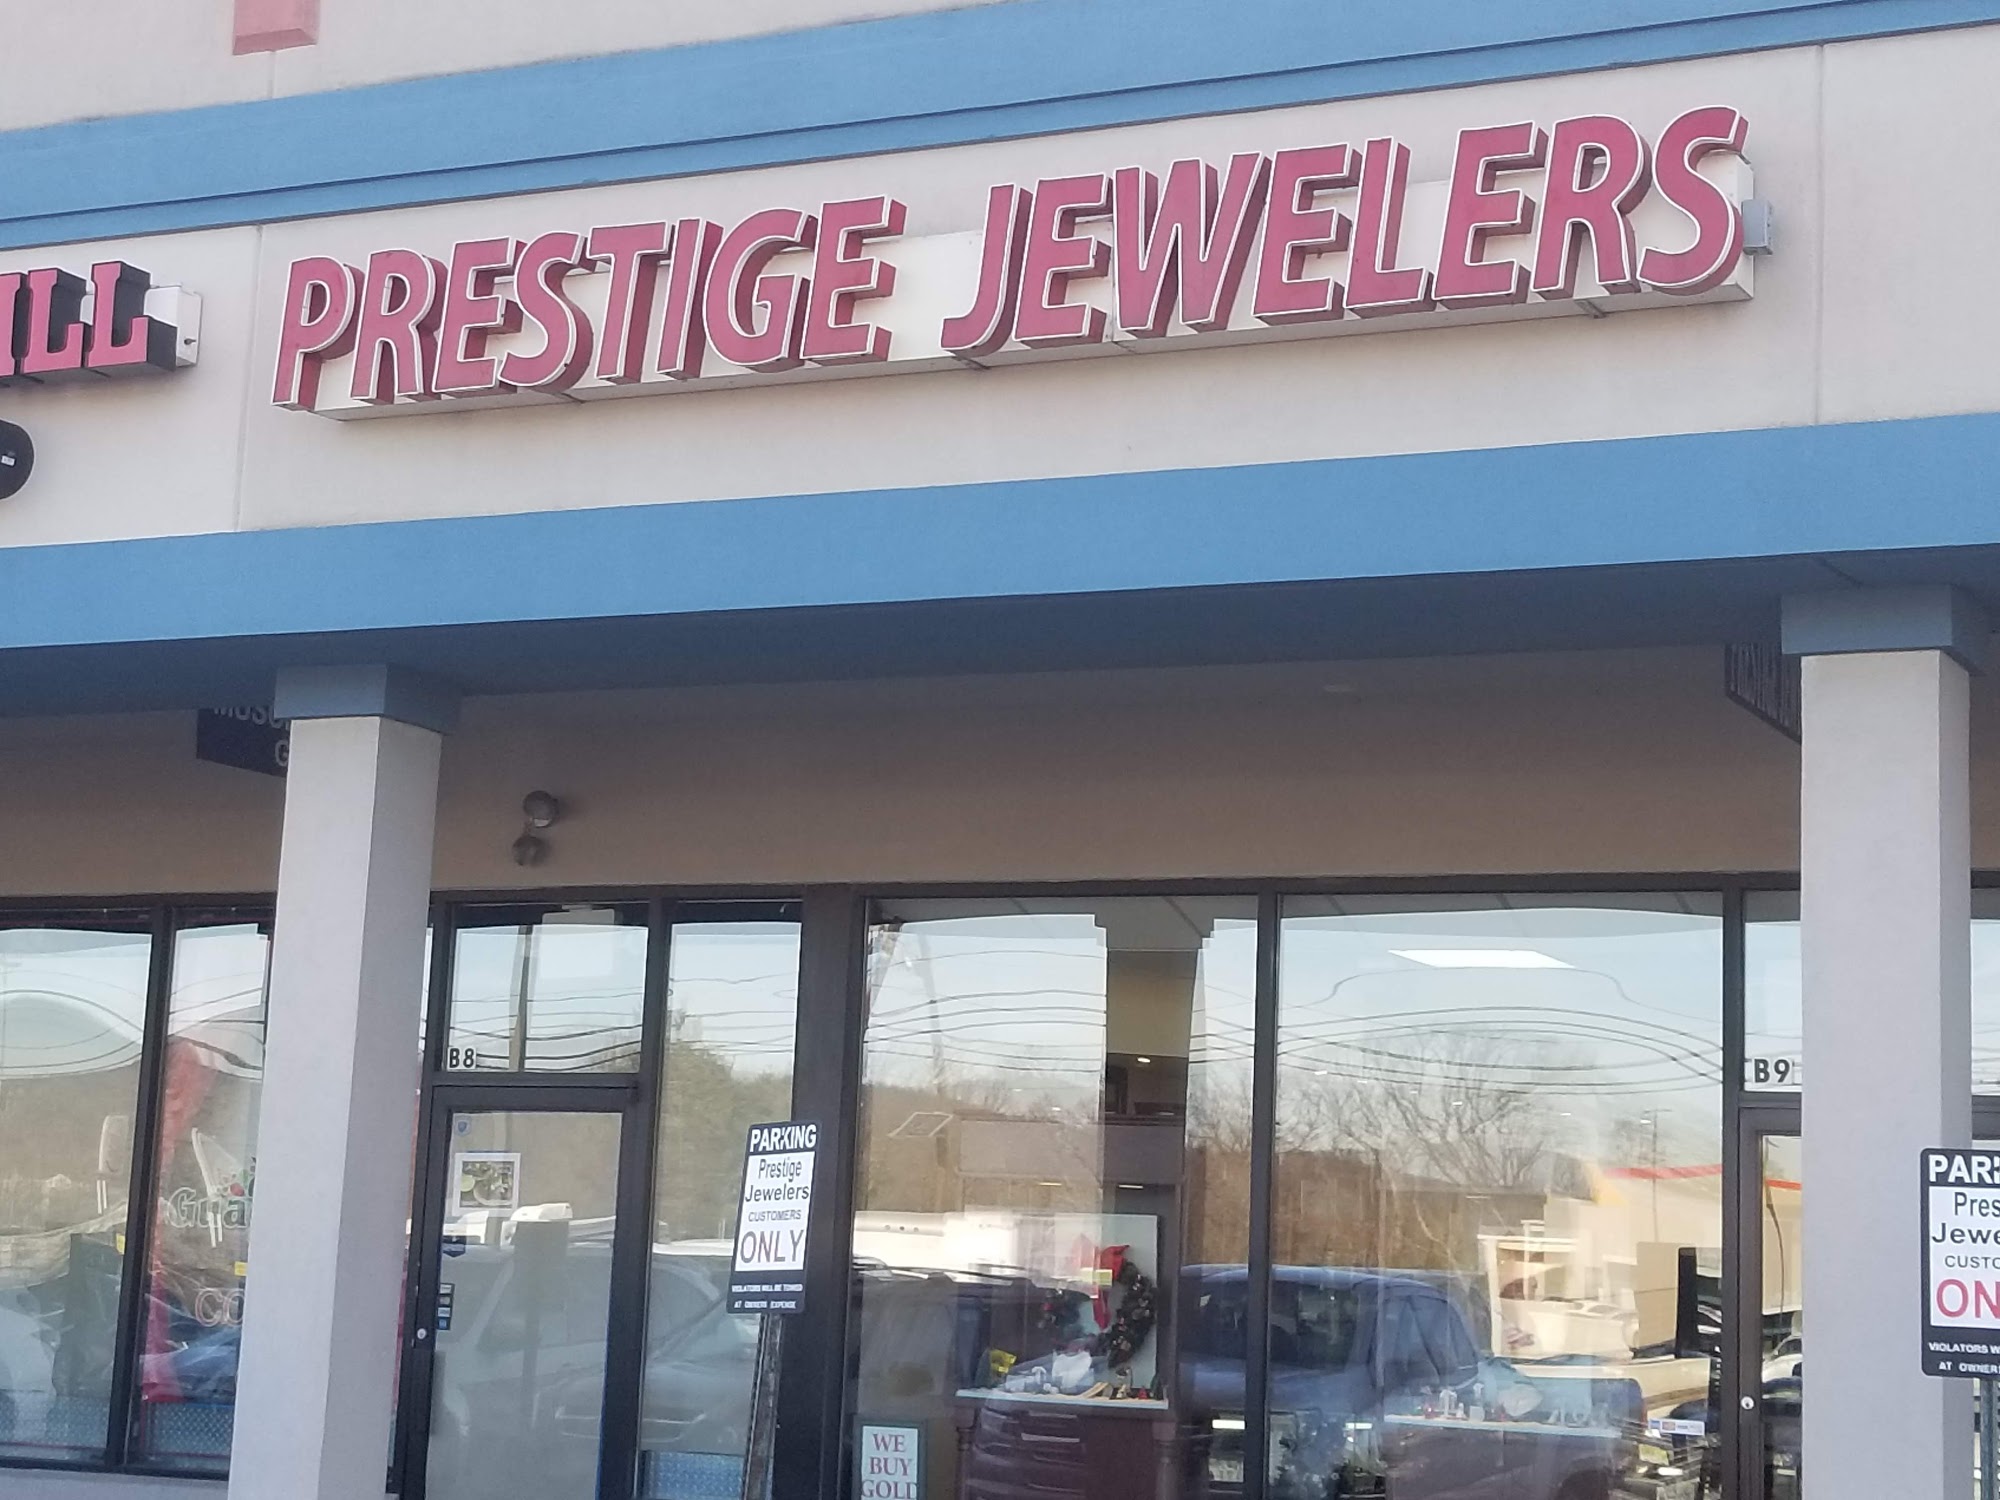 Prestige Jewelers